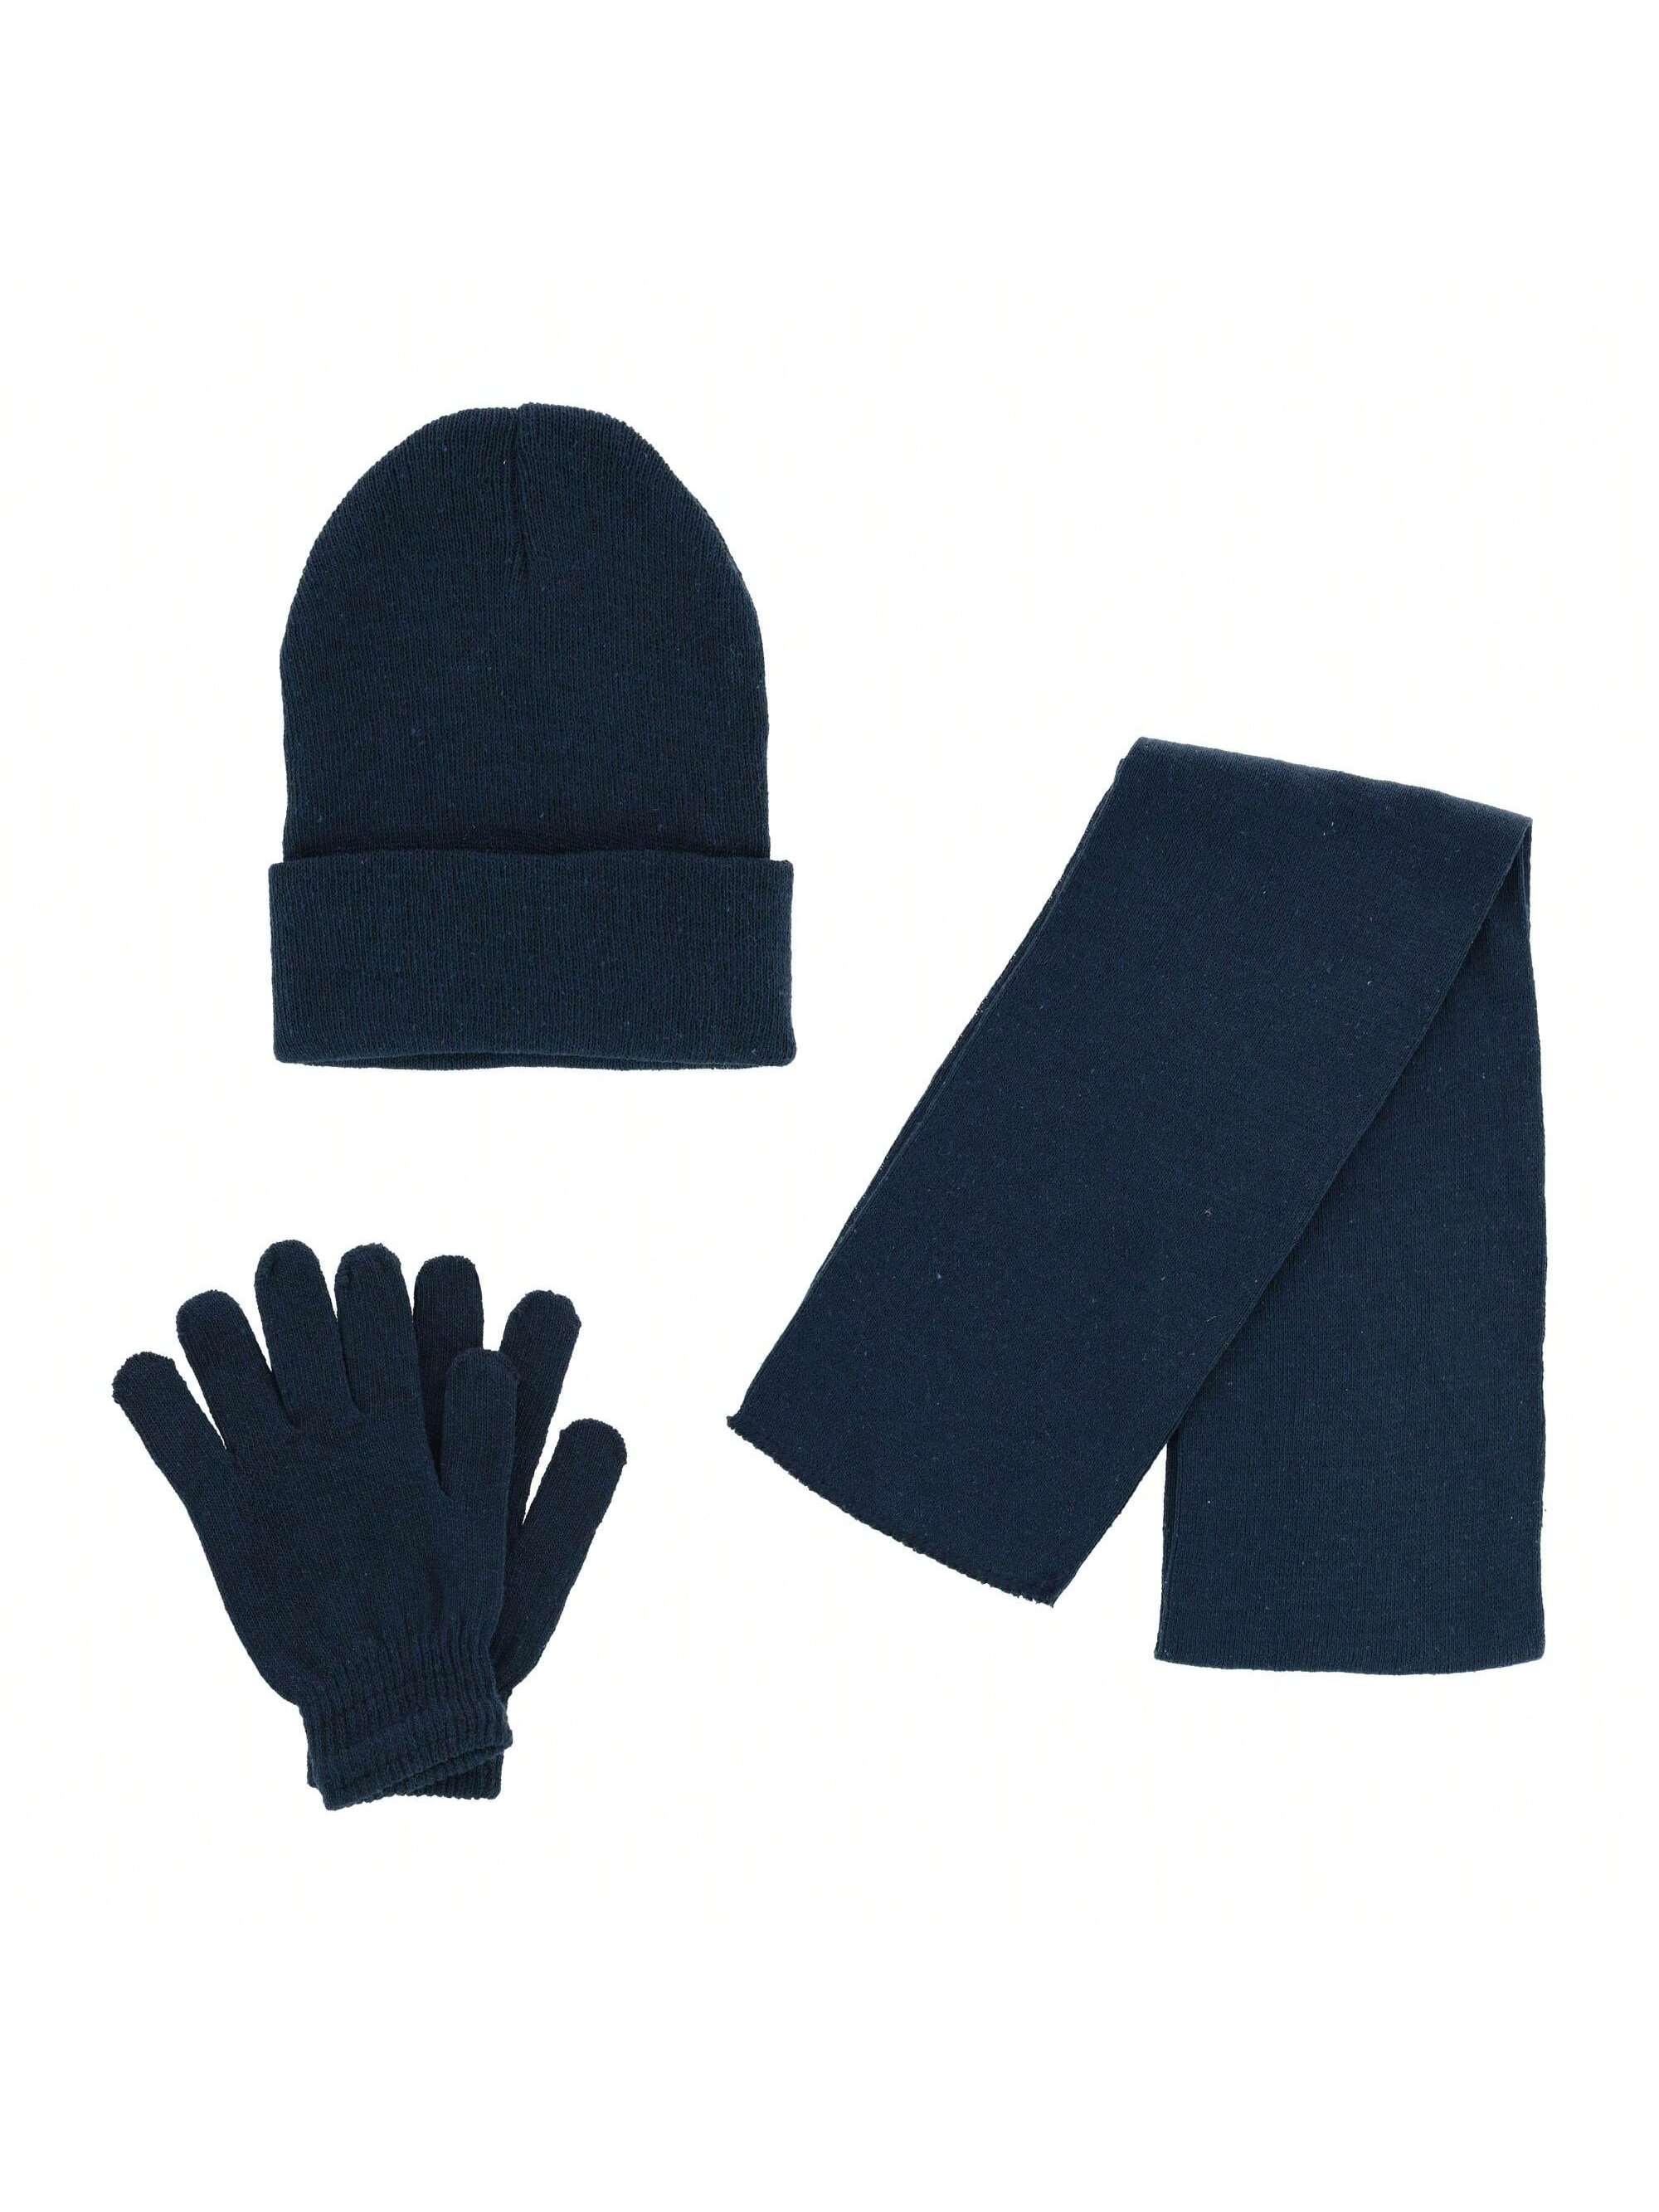 Базовая шапка-бини CTM, комплект из шарфа и перчаток, темно-синий комплект аксессуаров ctm carmk034 белый